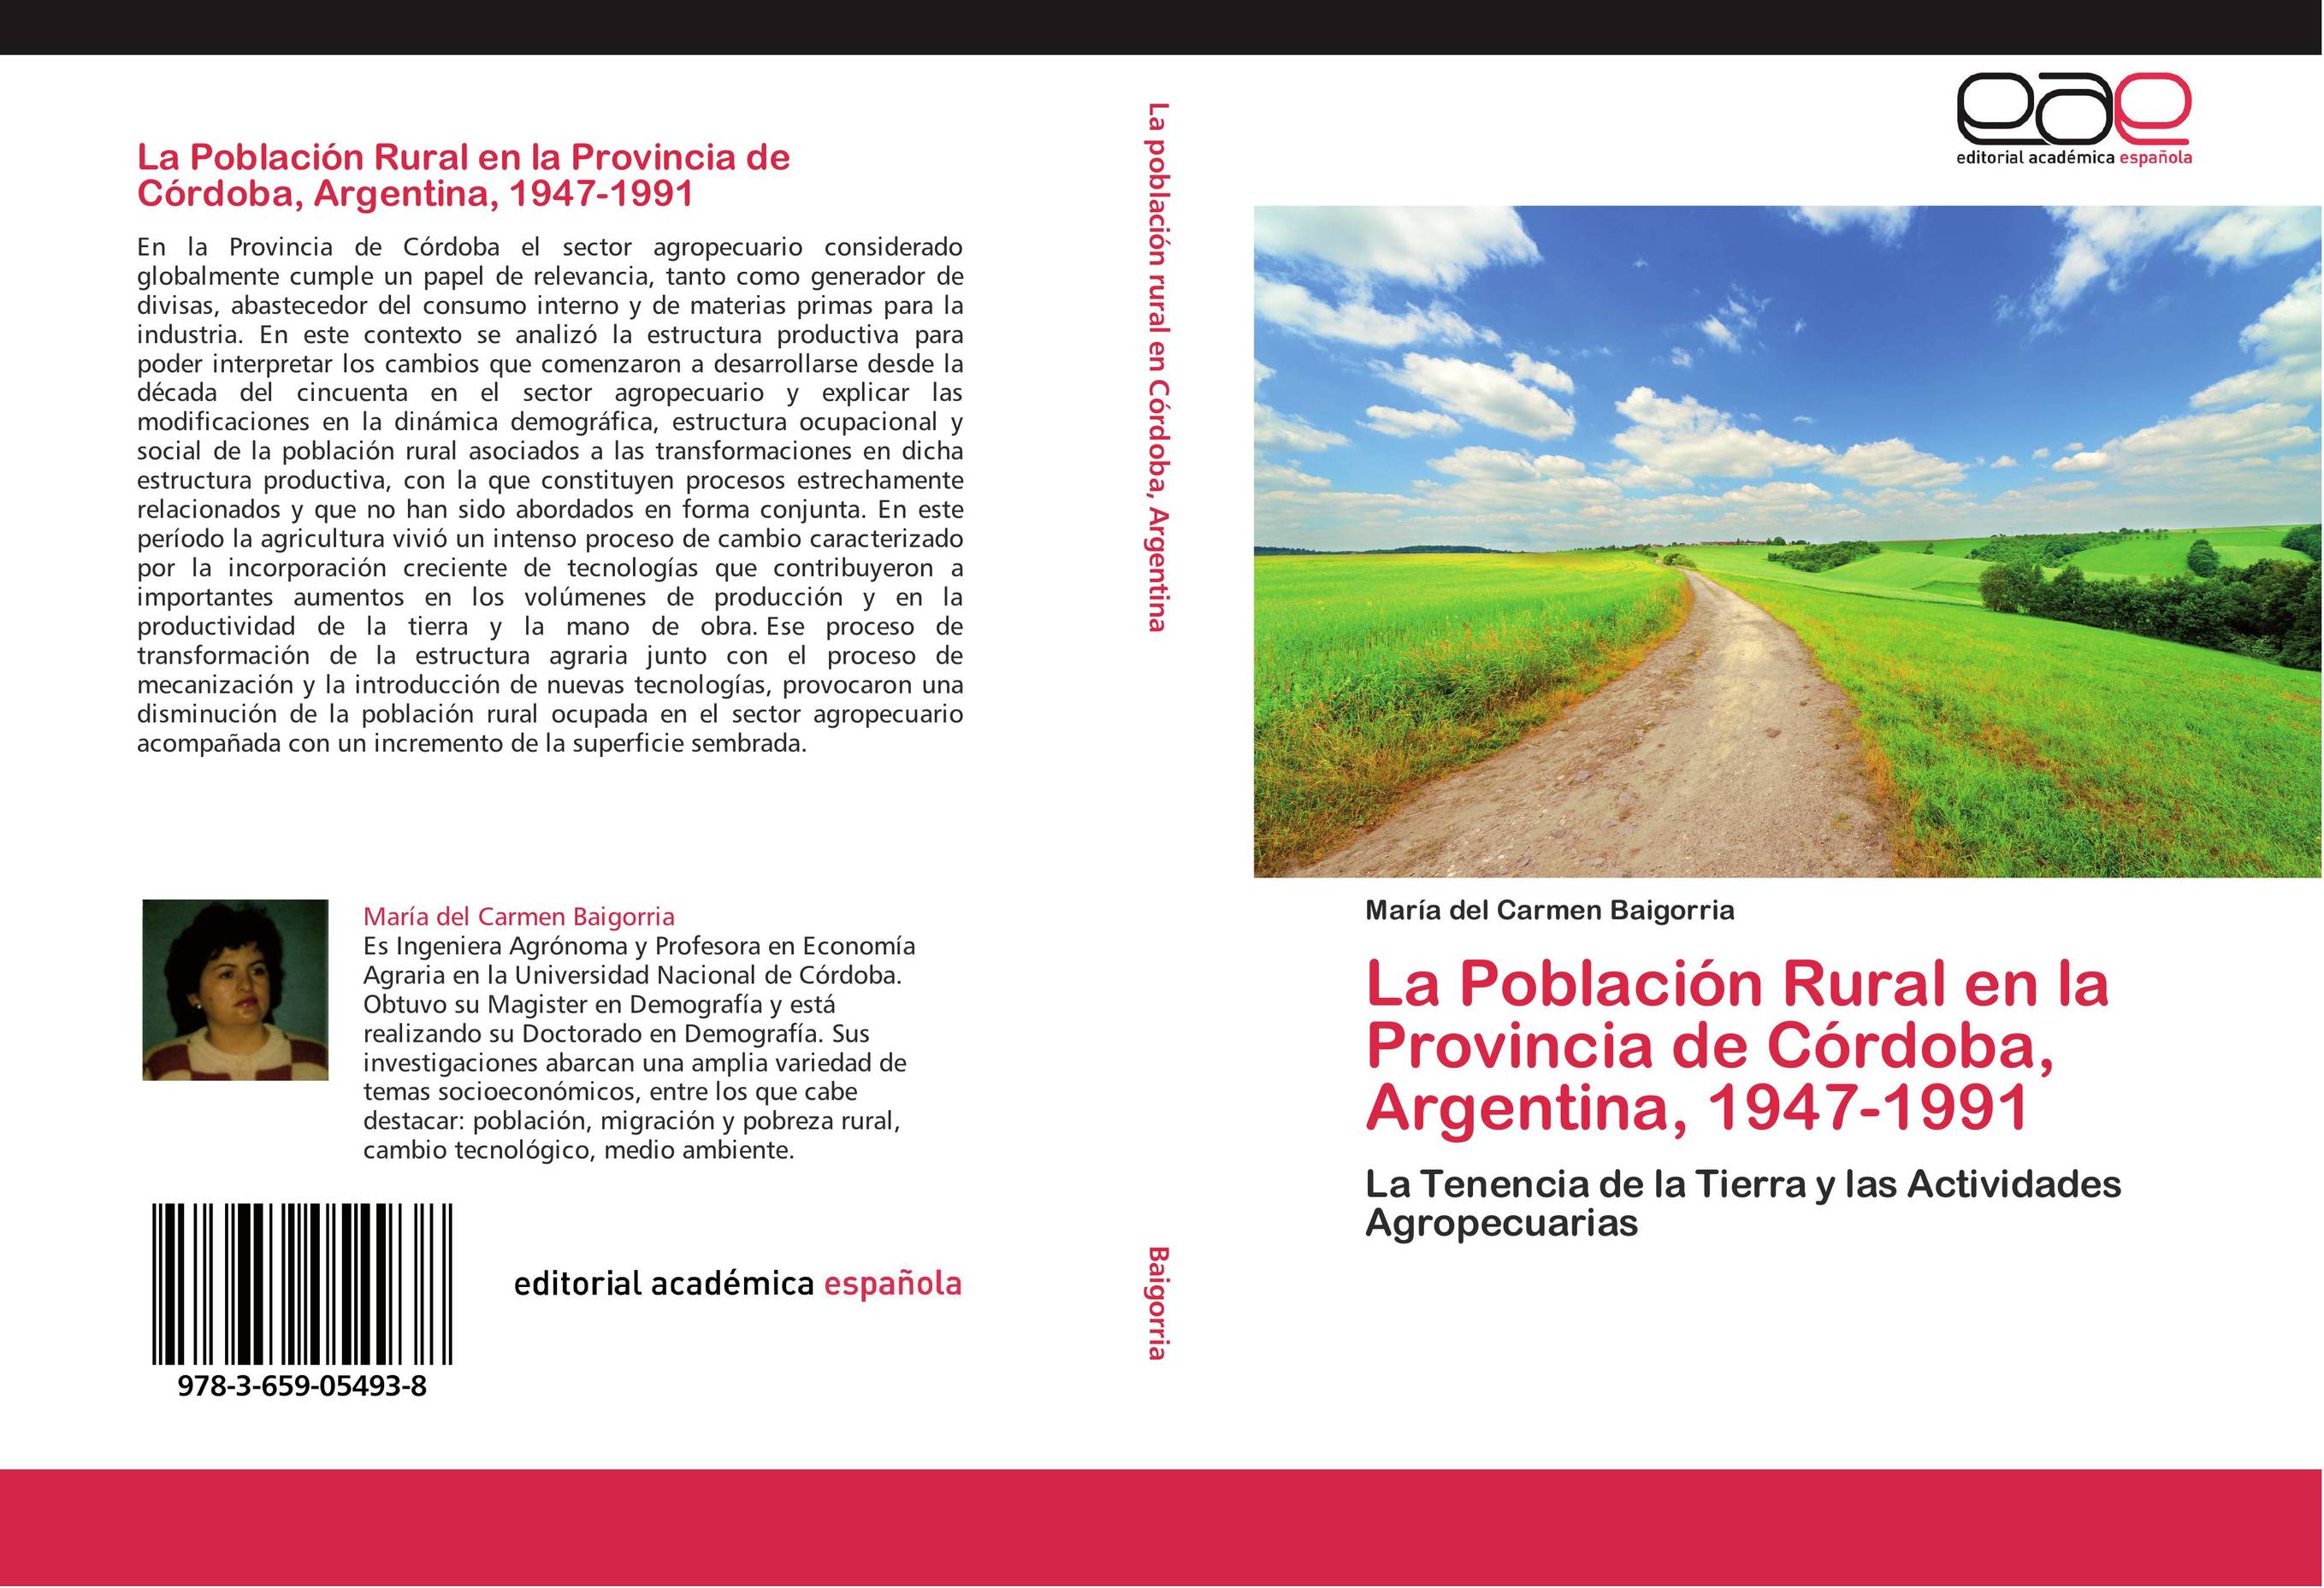 La Población Rural en la Provincia de Córdoba, Argentina, 1947-1991